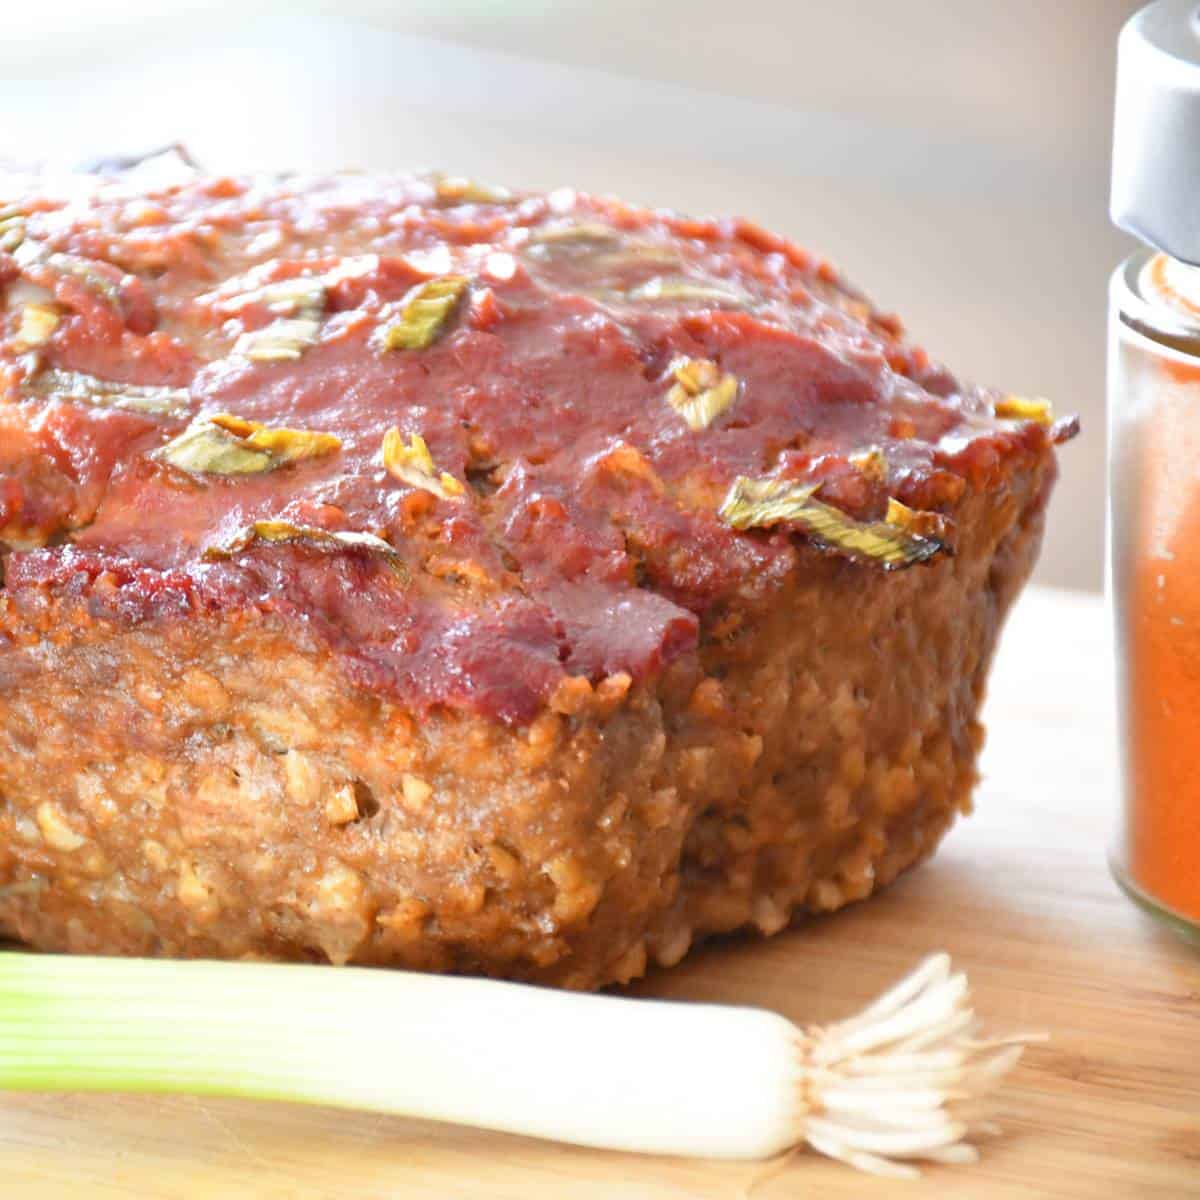 Un pain de viande faible en sodium personnalisé avec de la sauce barbecue, du paprika et des oignons verts.